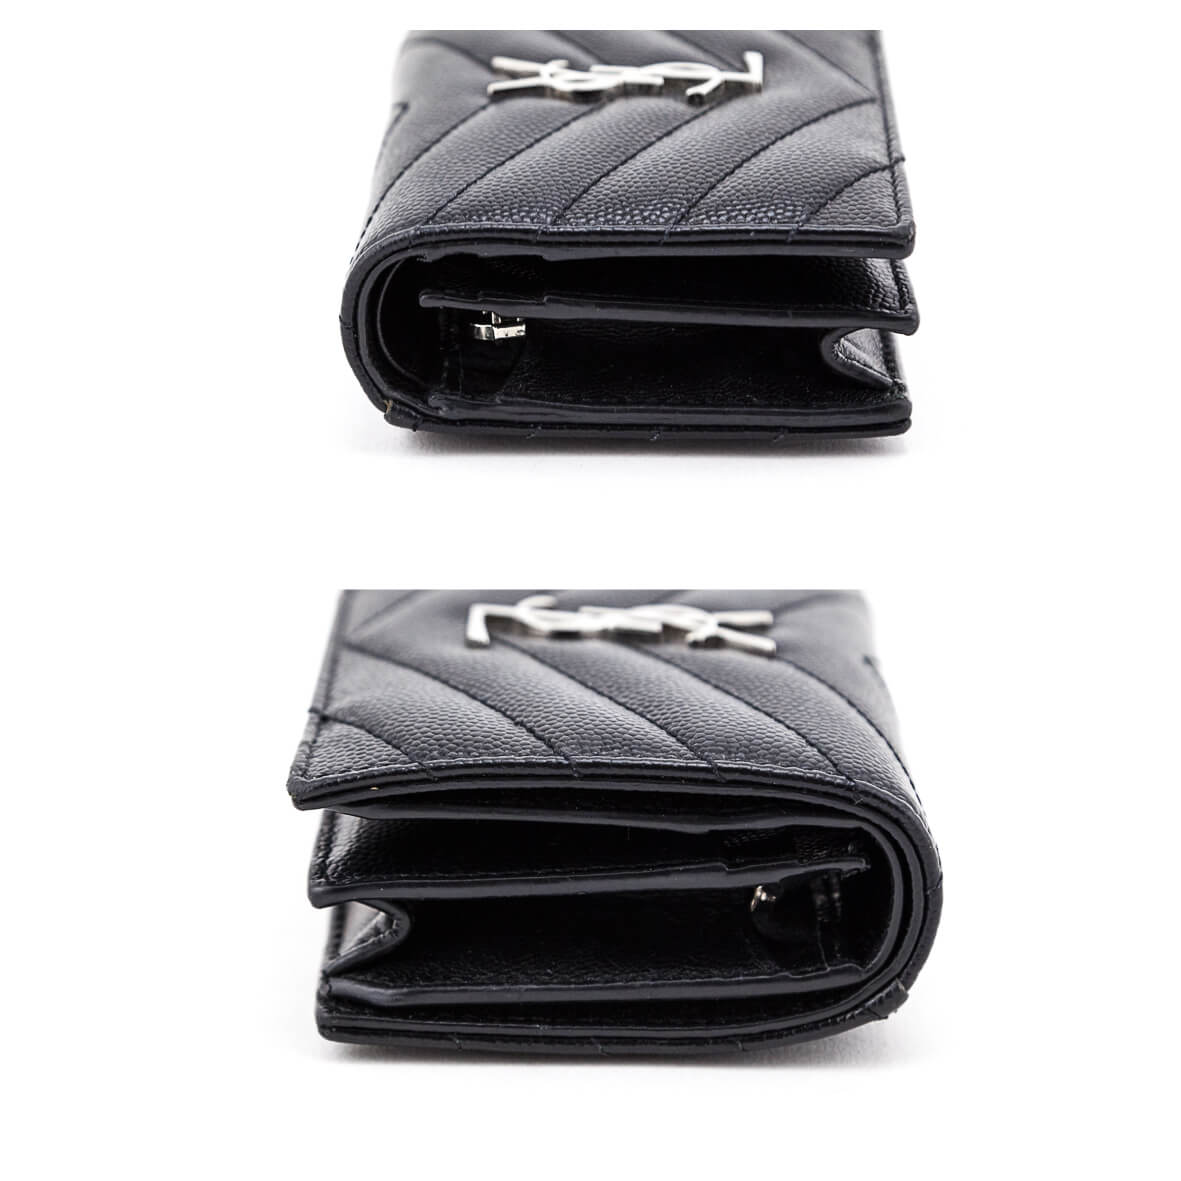 Saint Laurent Black Grain De Poudre Monogram Card Case - Love that Bag etc - Preowned Authentic Designer Handbags & Preloved Fashions